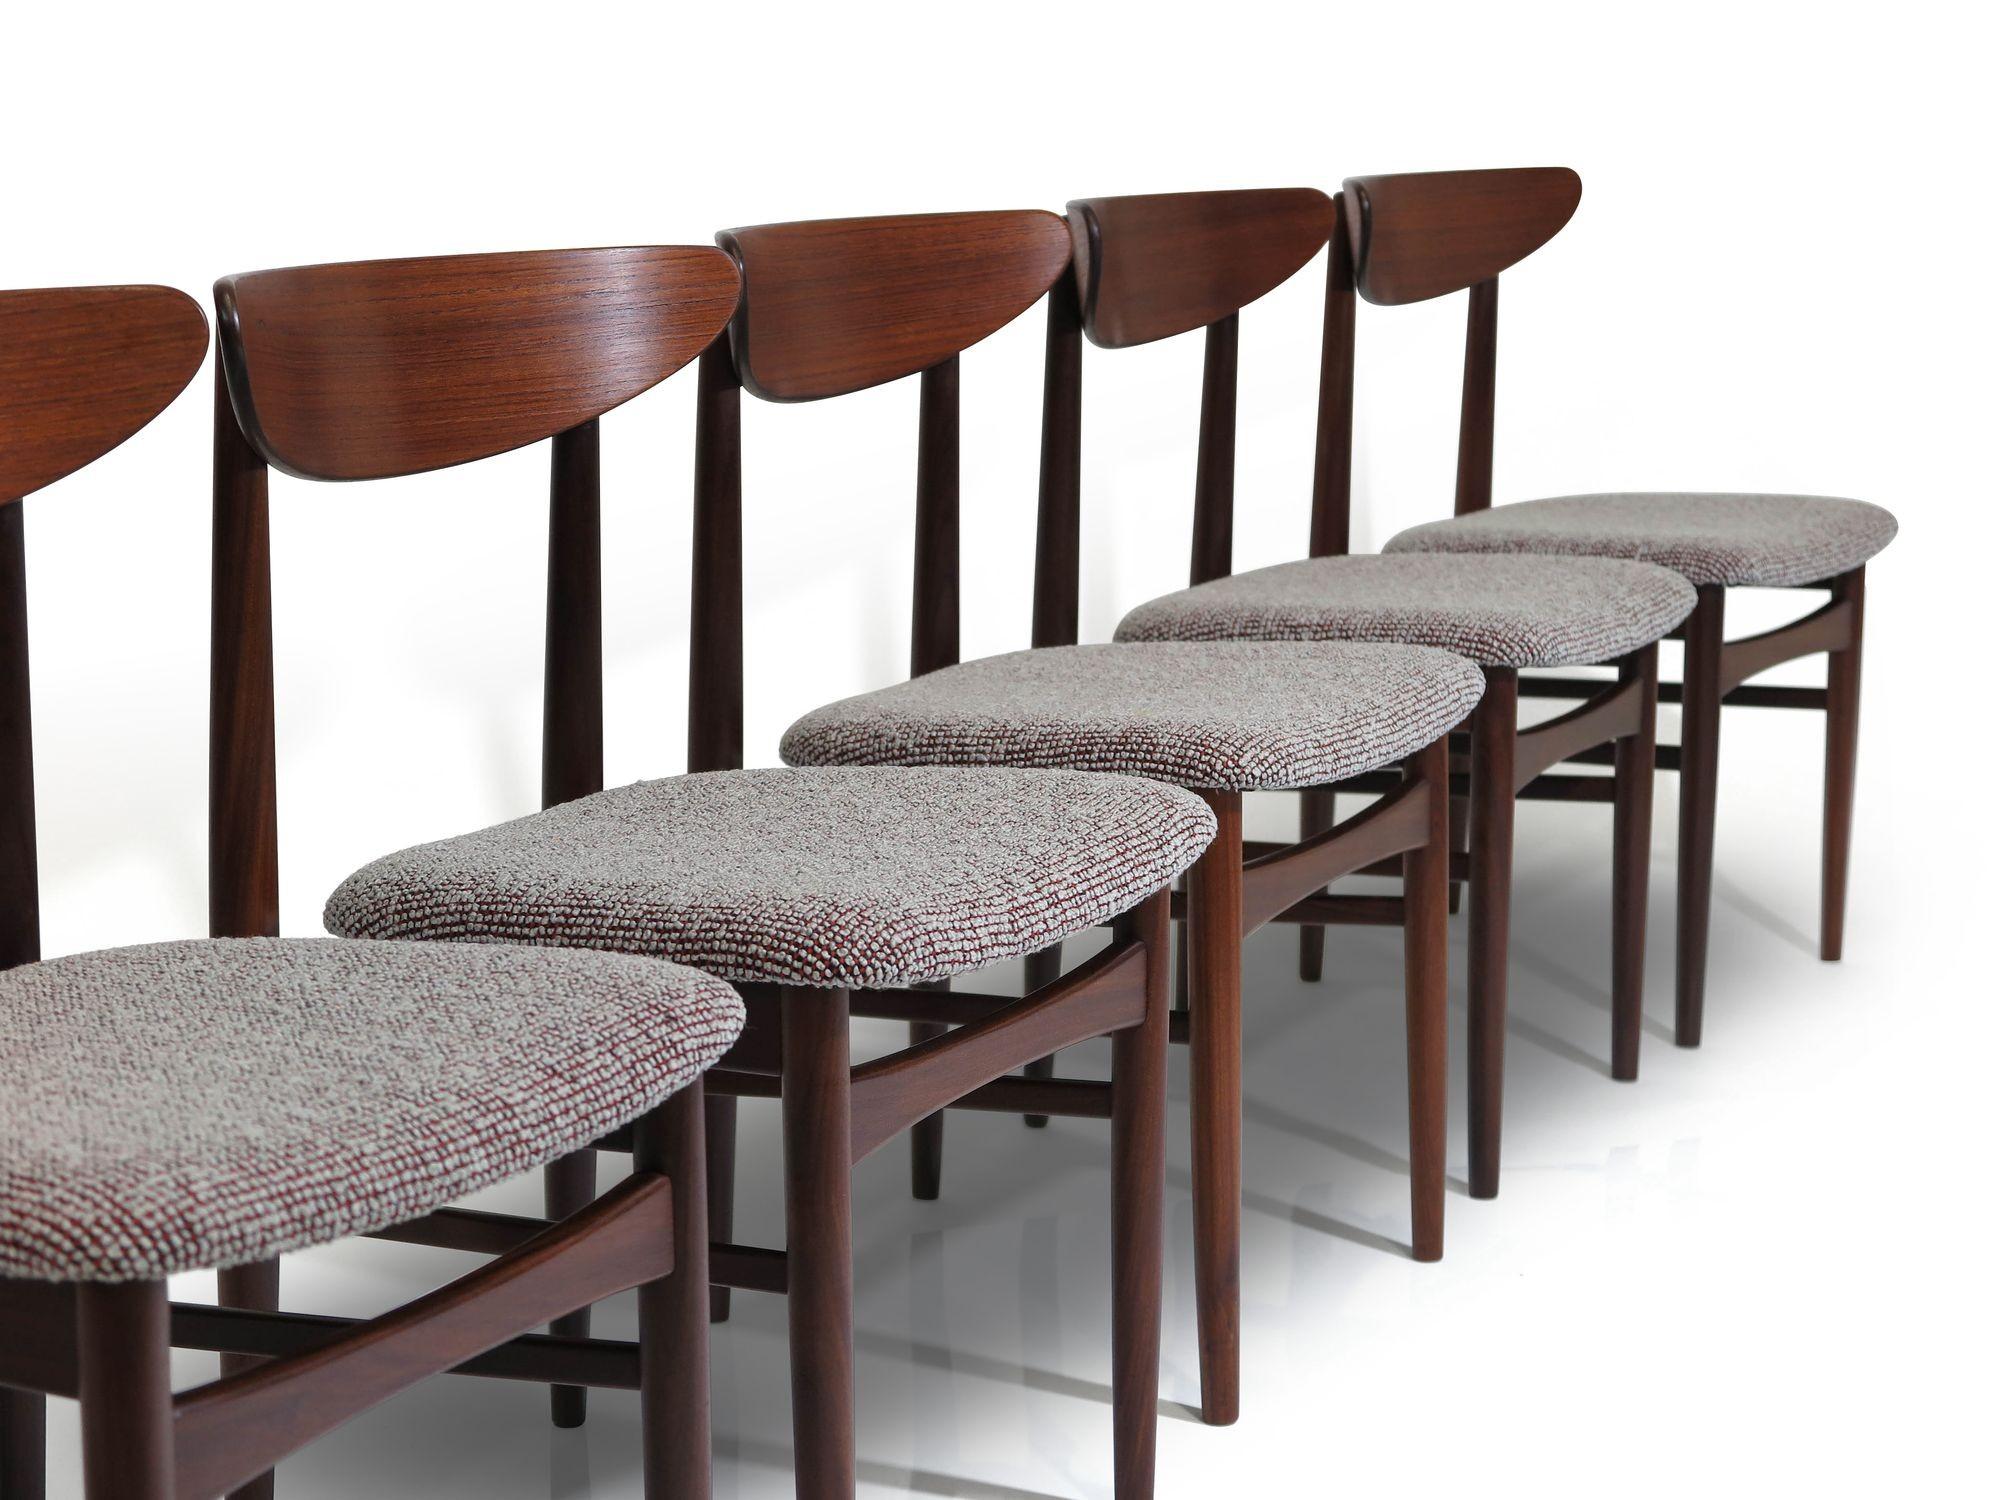 Ensemble de six chaises de salle à manger en teck du milieu du siècle dernier, conçues par E.W Bach pour Skovby Moblefabrik, modèle 57. Les chaises sont fabriquées en teck massif et leurs sièges sont nouvellement rembourrés. Les chaises sont en